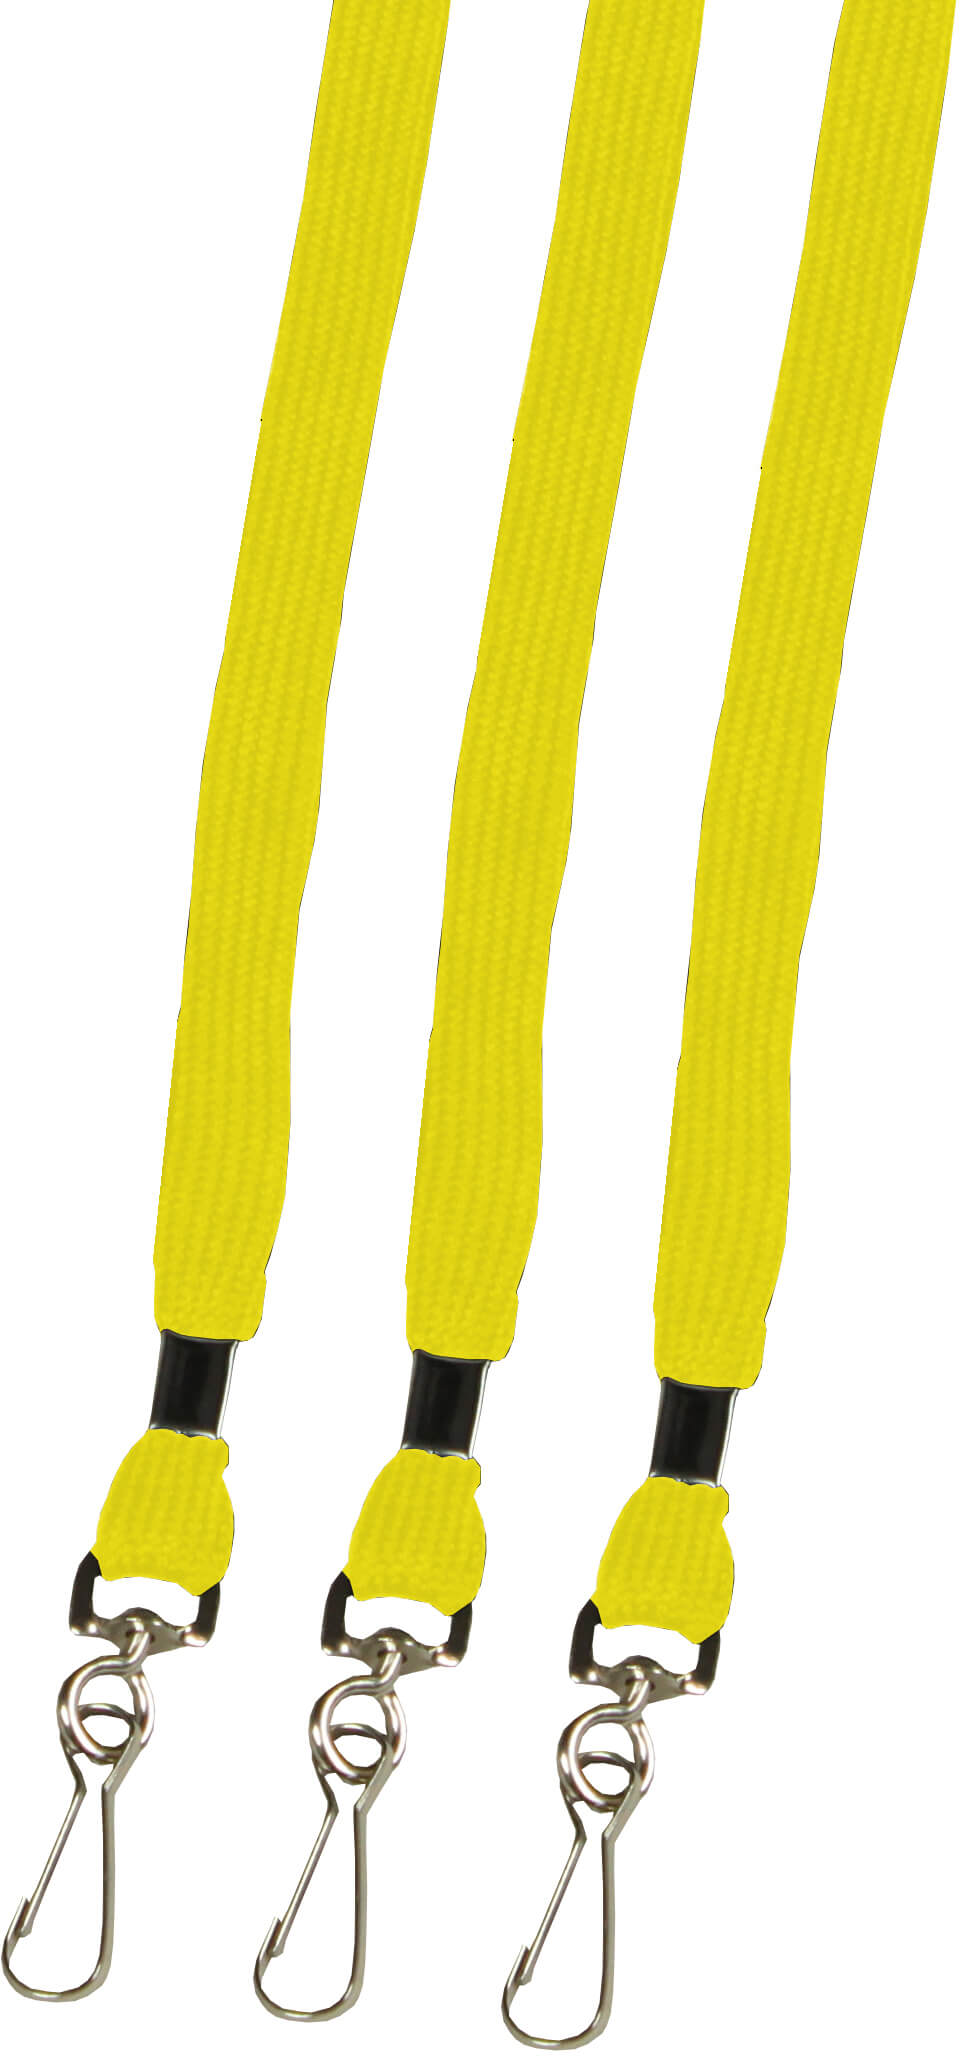 Umhängebänder mit Haken in gelb sofort lieferbar! | Bestnr. UMBAMS-100-GE